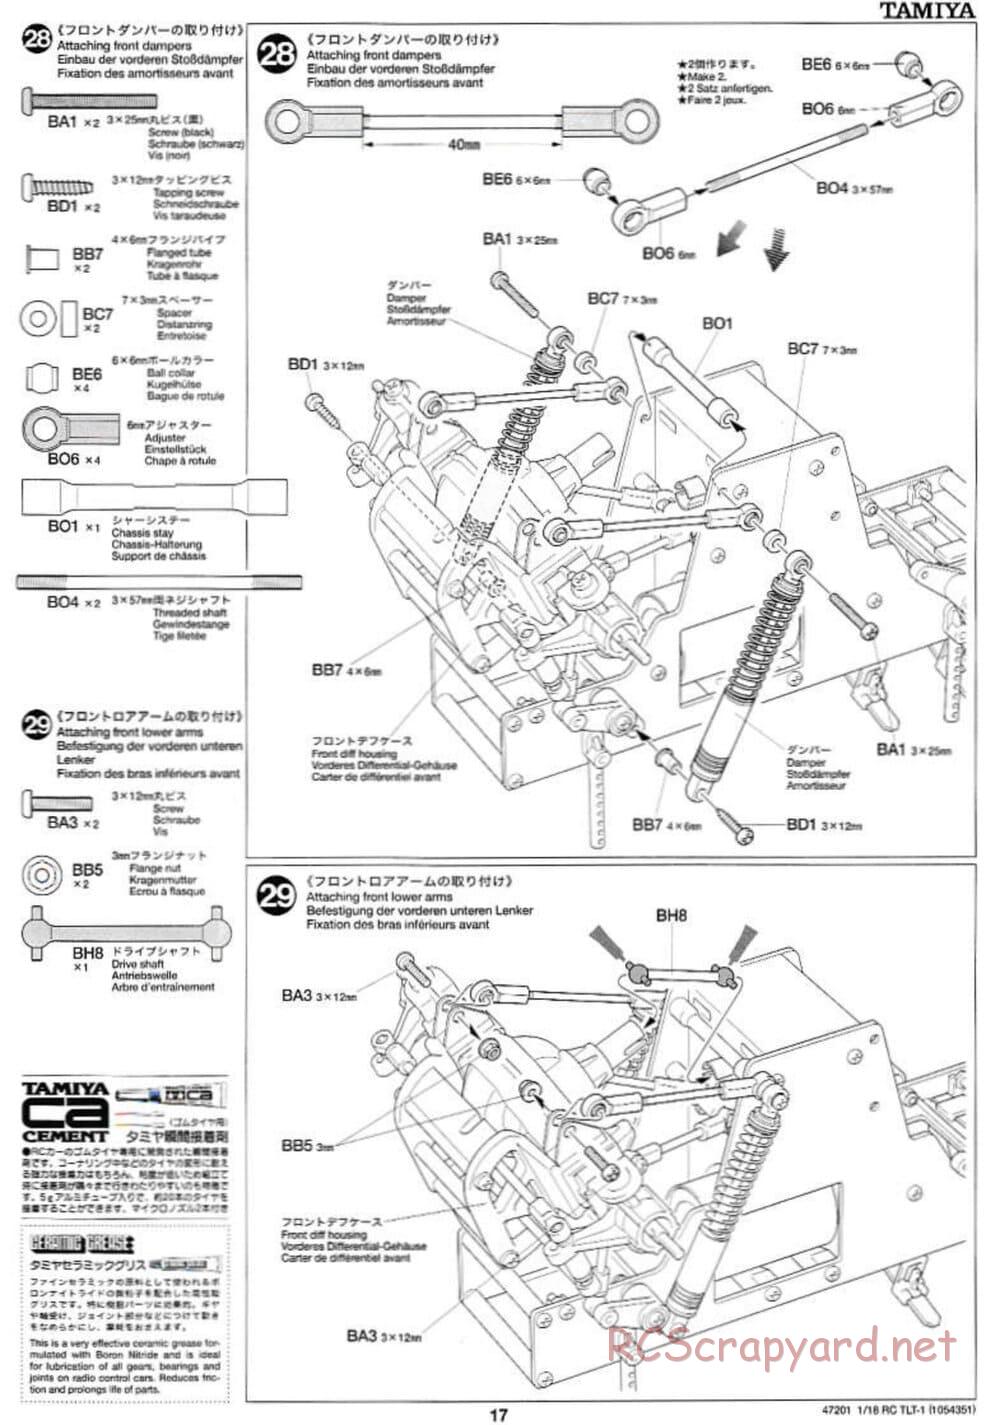 Tamiya - Rock Buster - TLT-1 Chassis - Manual - Page 17